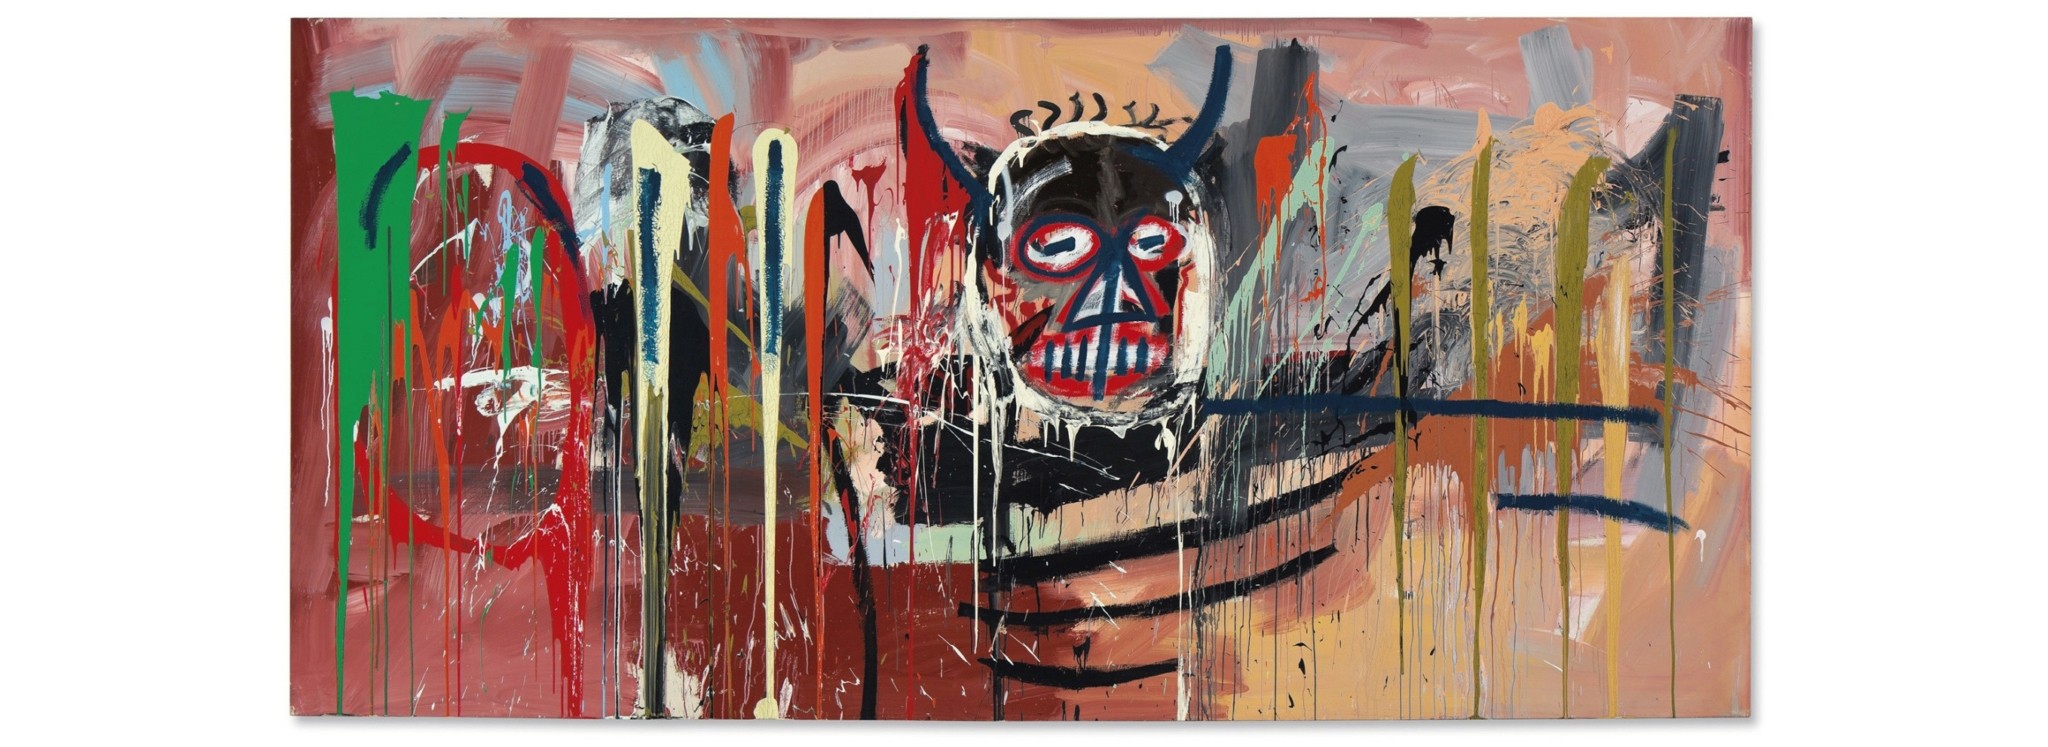 Γιατί είναι σπουδαίος ο πίνακας “Devil” των 85 εκατομμυρίων δολαρίων του Ζαν Μισέλ Μπασκιά